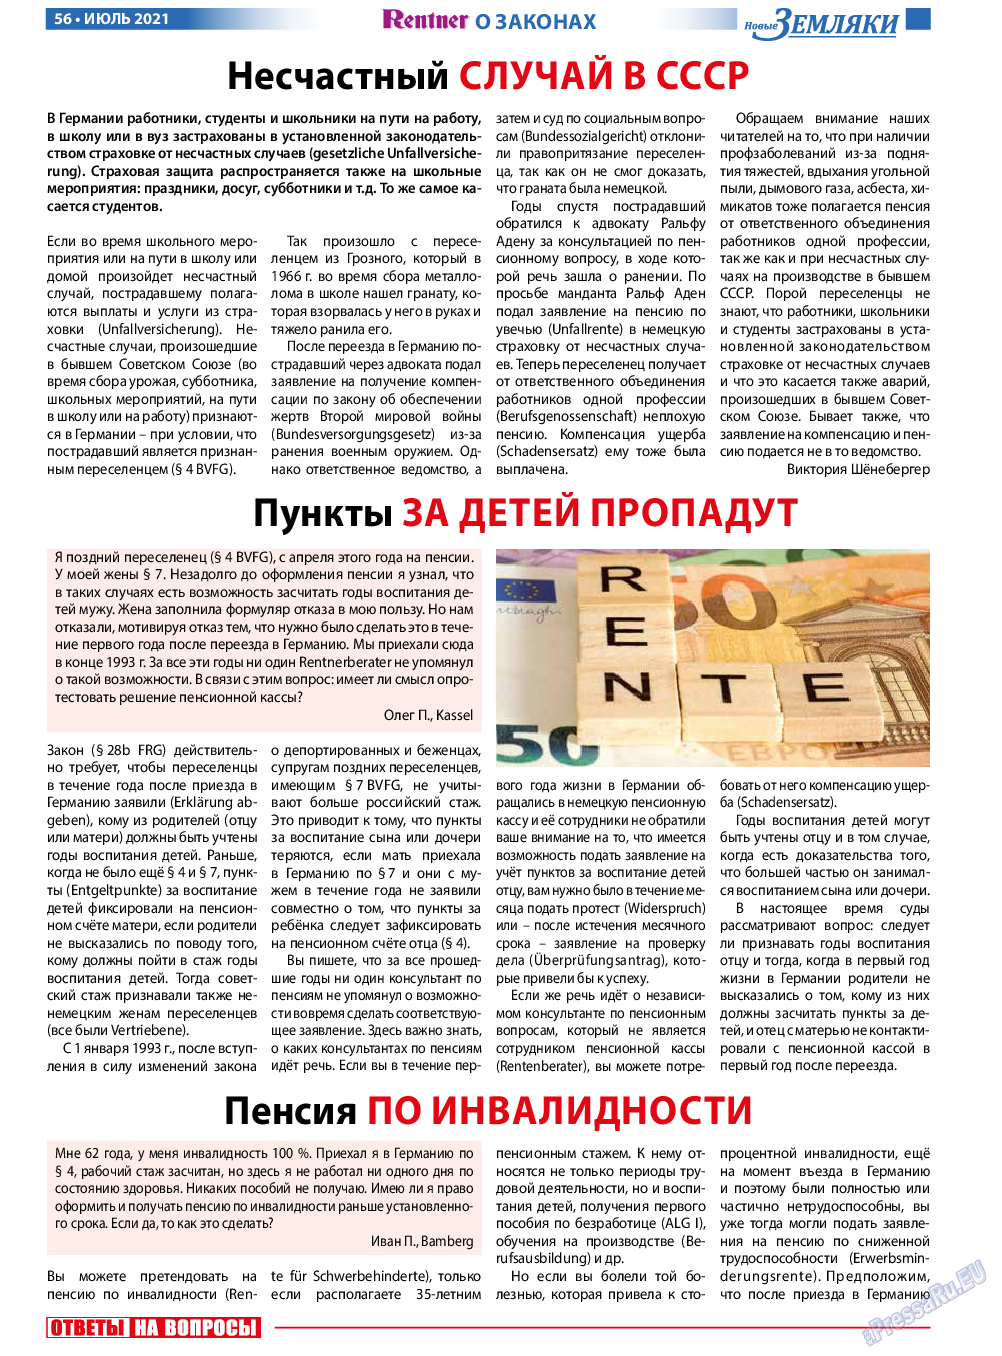 Новые Земляки, газета. 2021 №7 стр.56